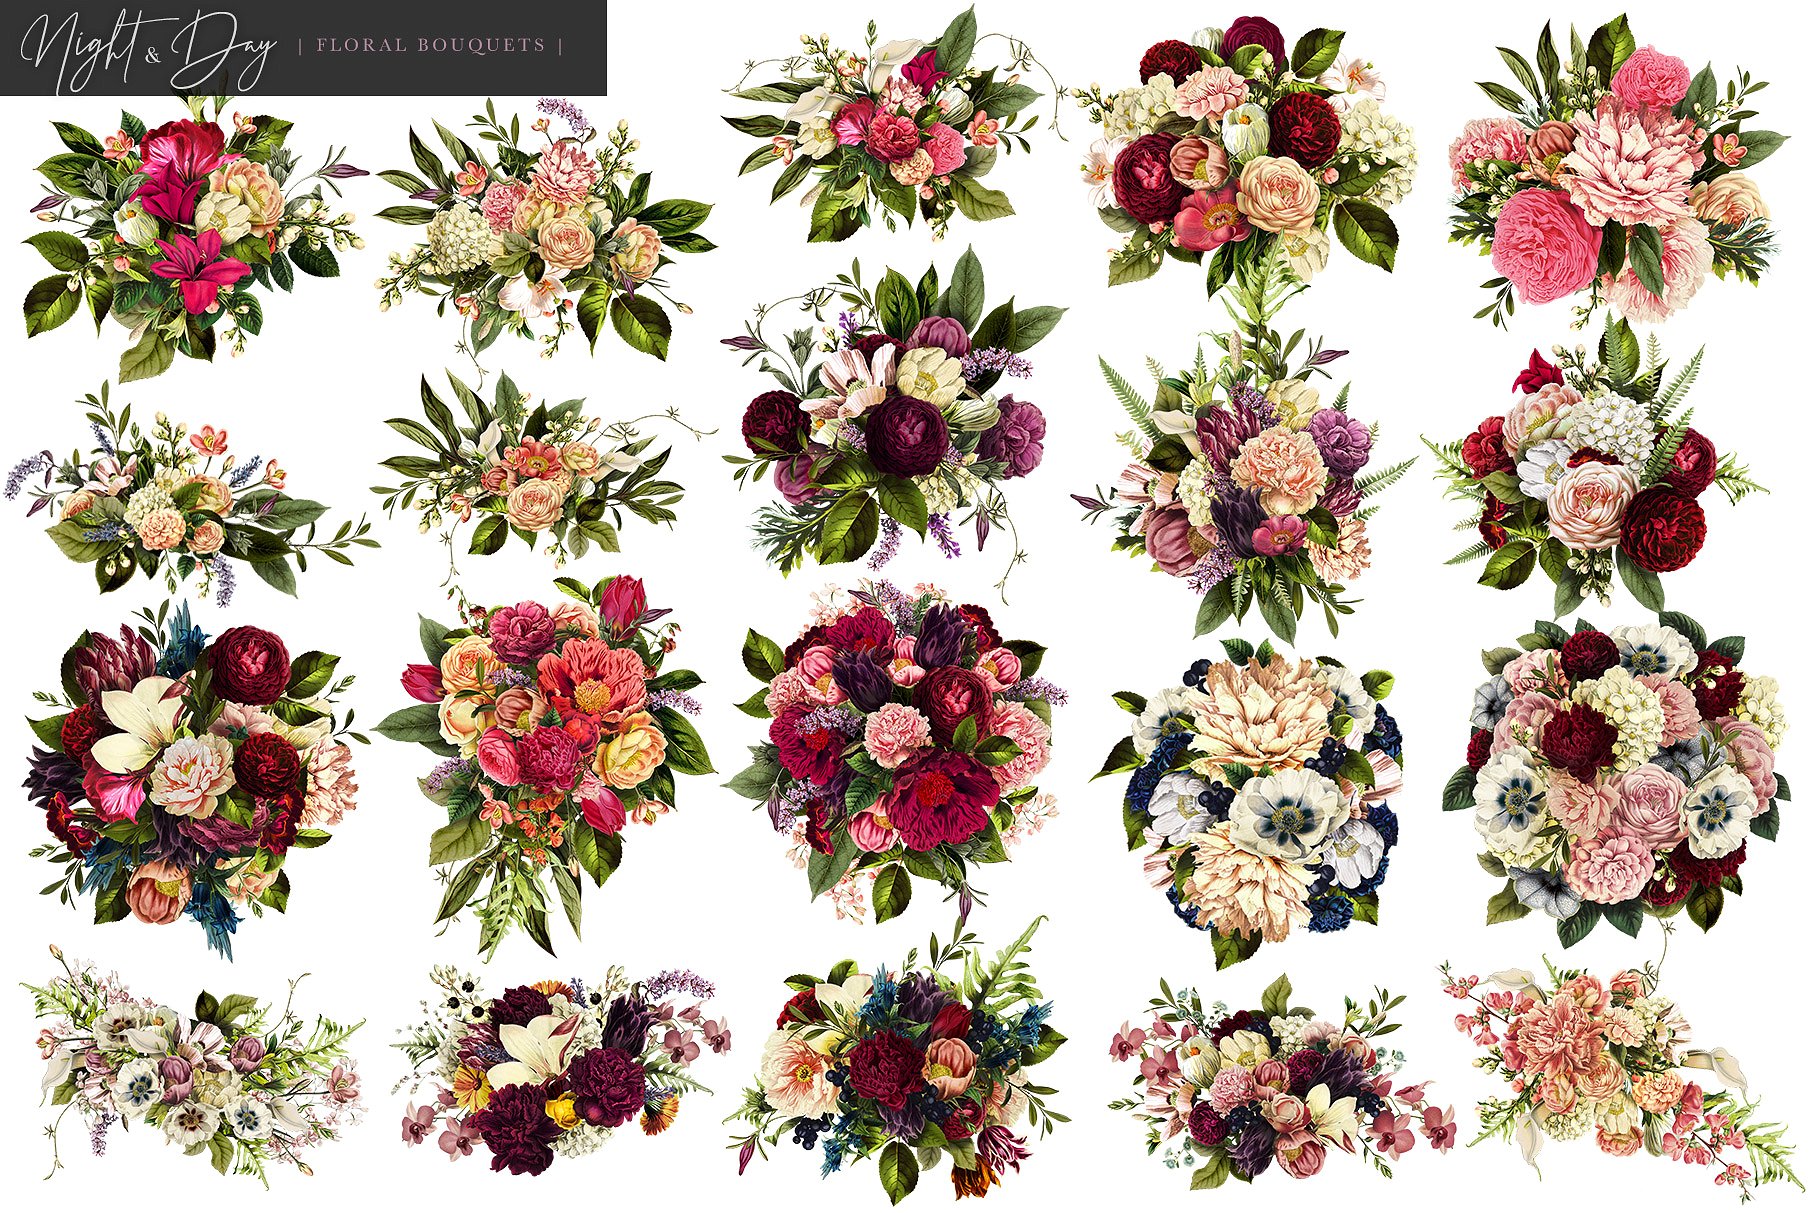 繁花似锦复古花卉插画素材[昼夜和白日两个版本] Night and Day Floral Bouquets插图(6)